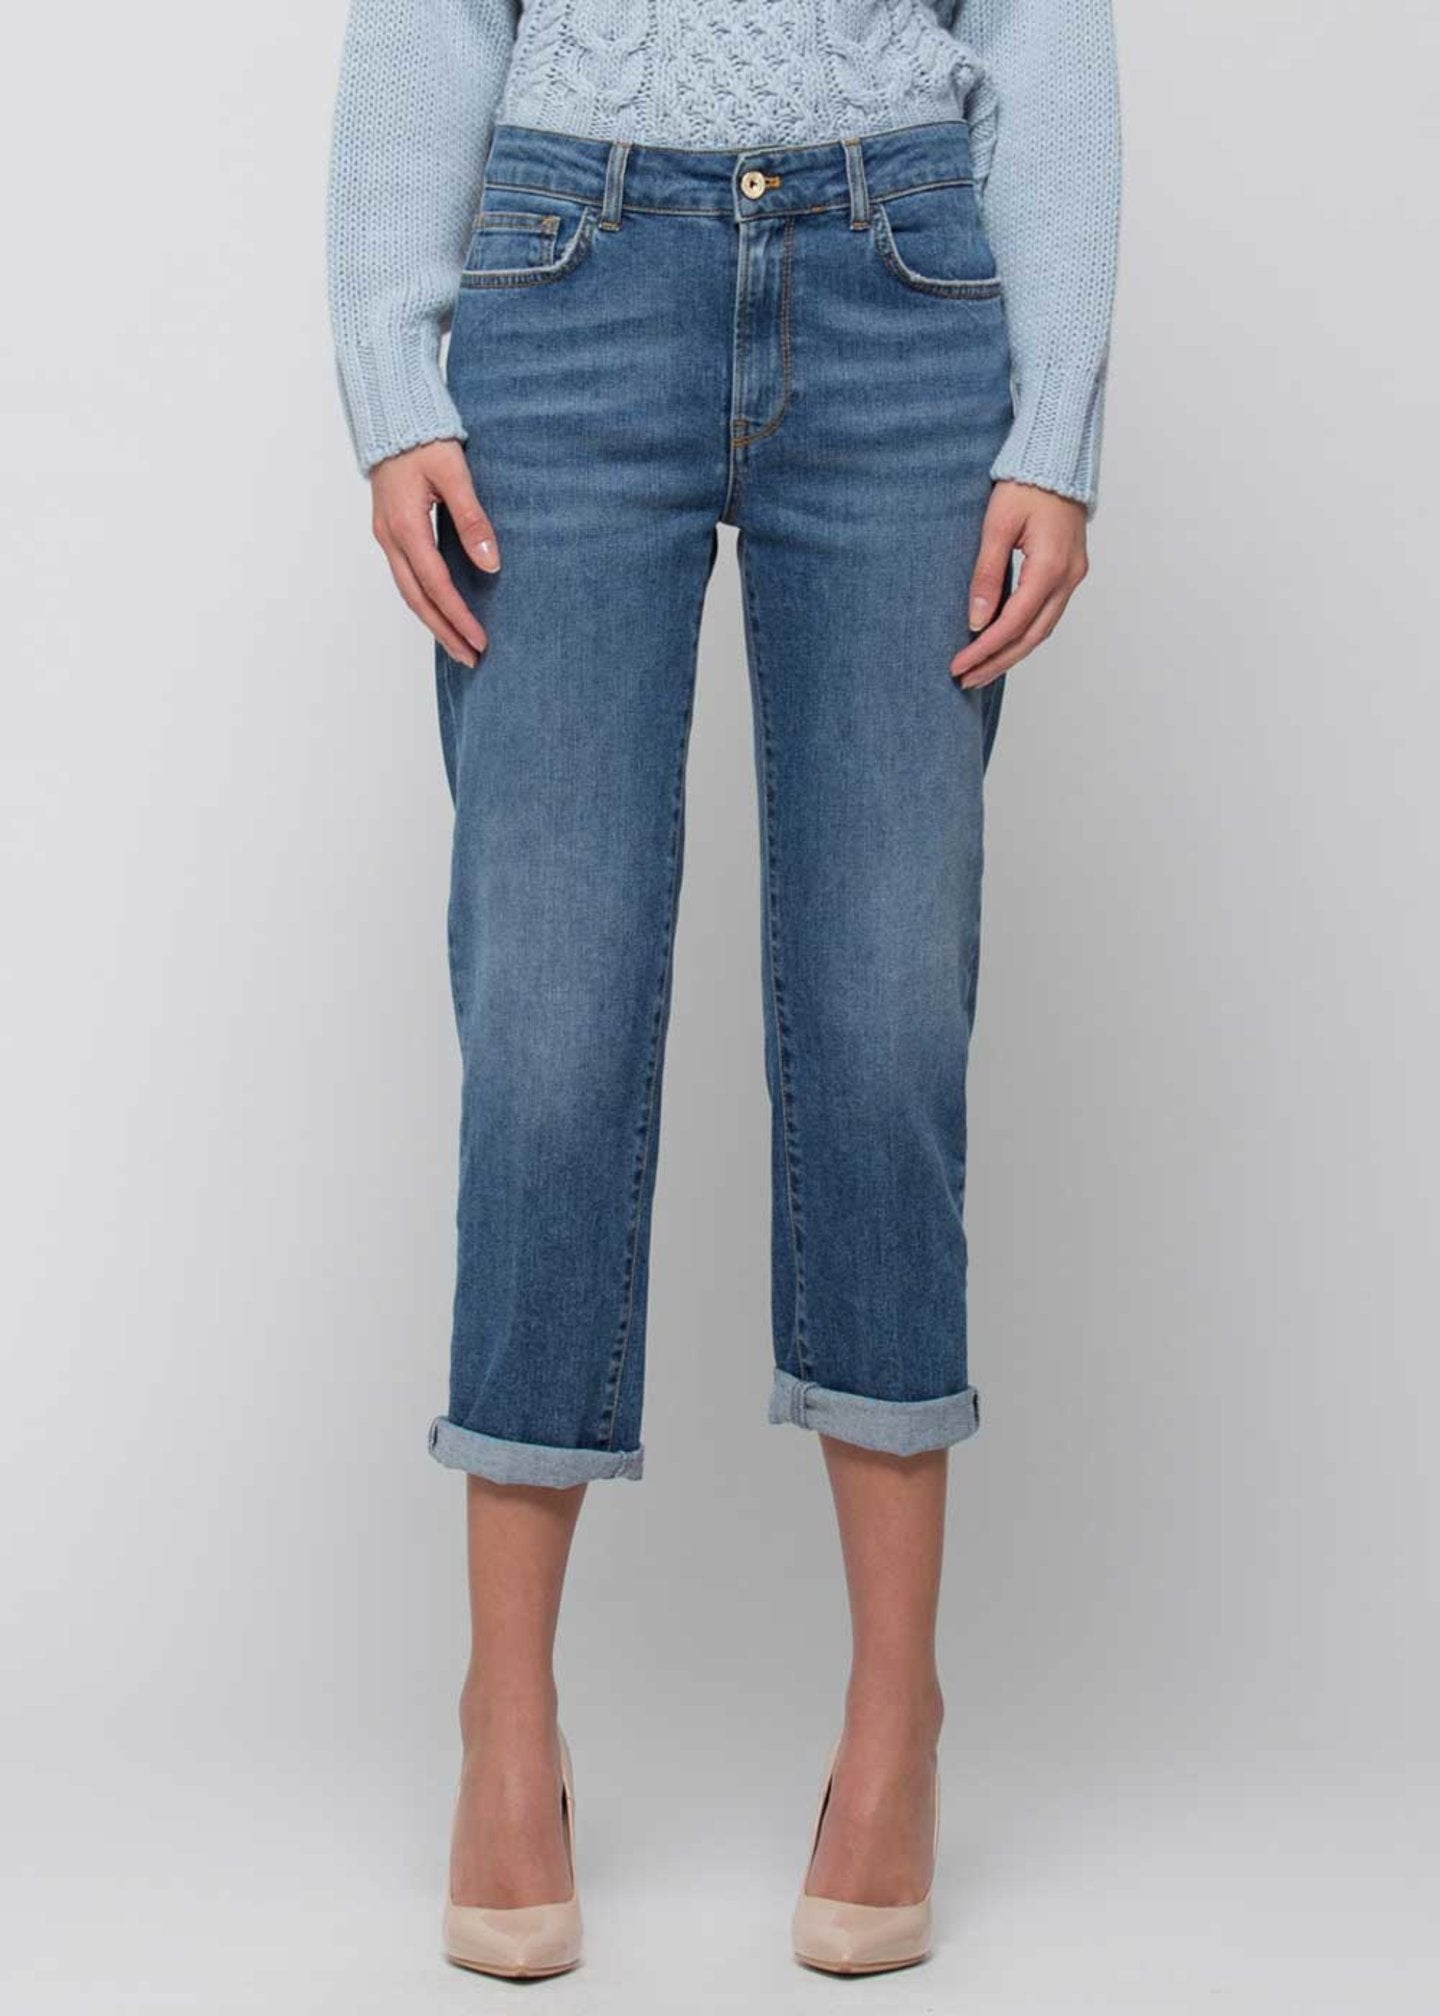 Denim Kocca Capri / Jeans - Ideal Moda